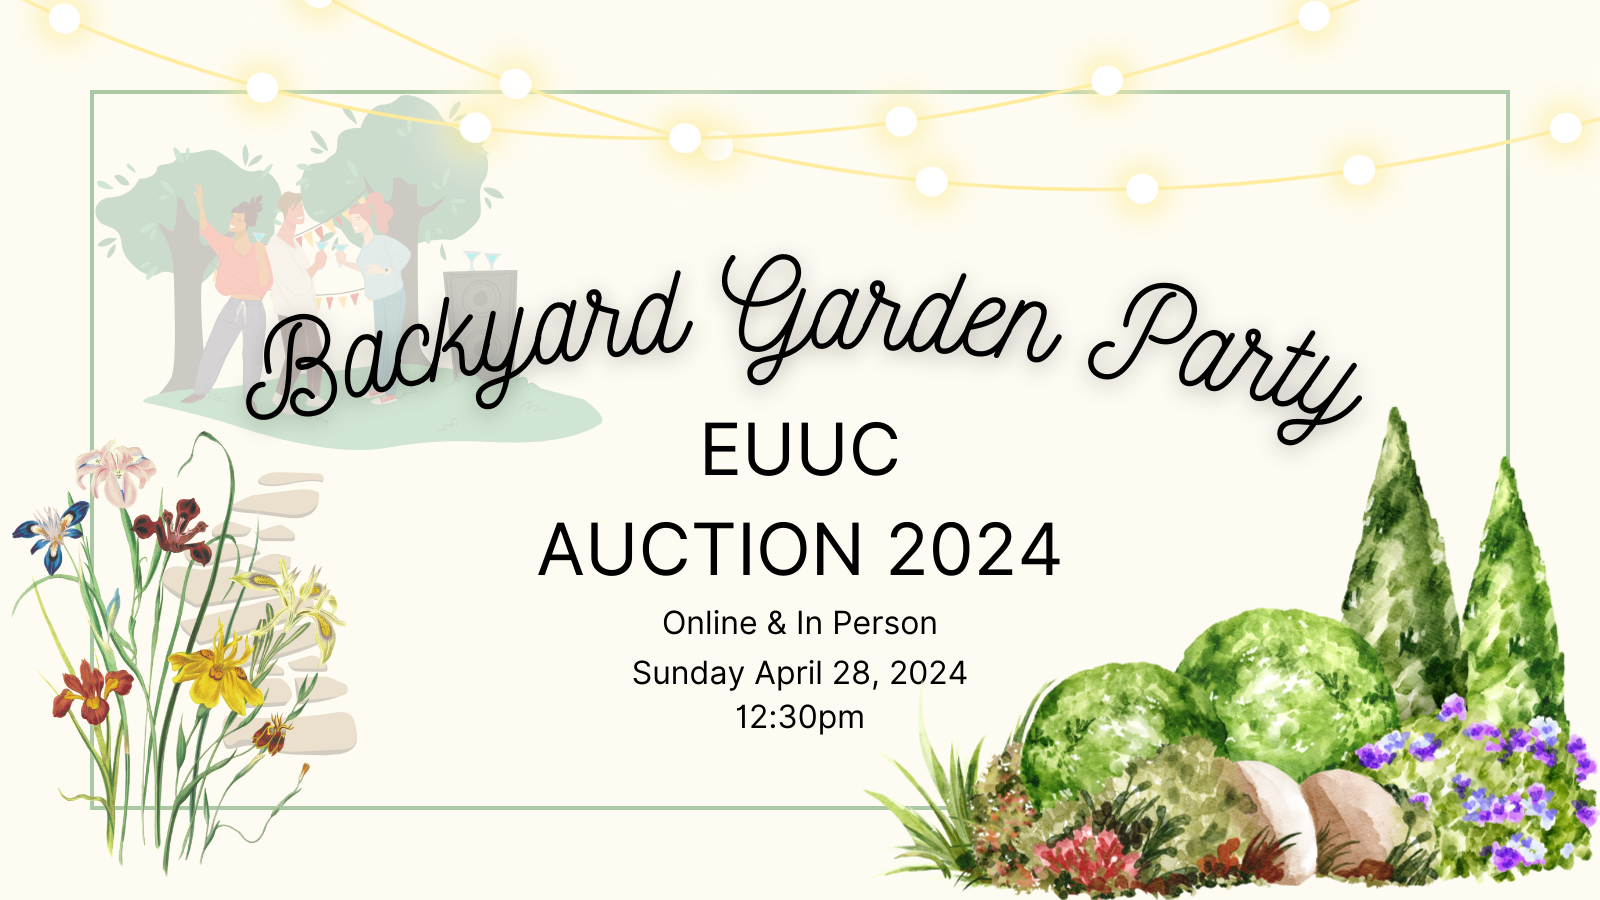 Backyard Garden Party - Annual Auction